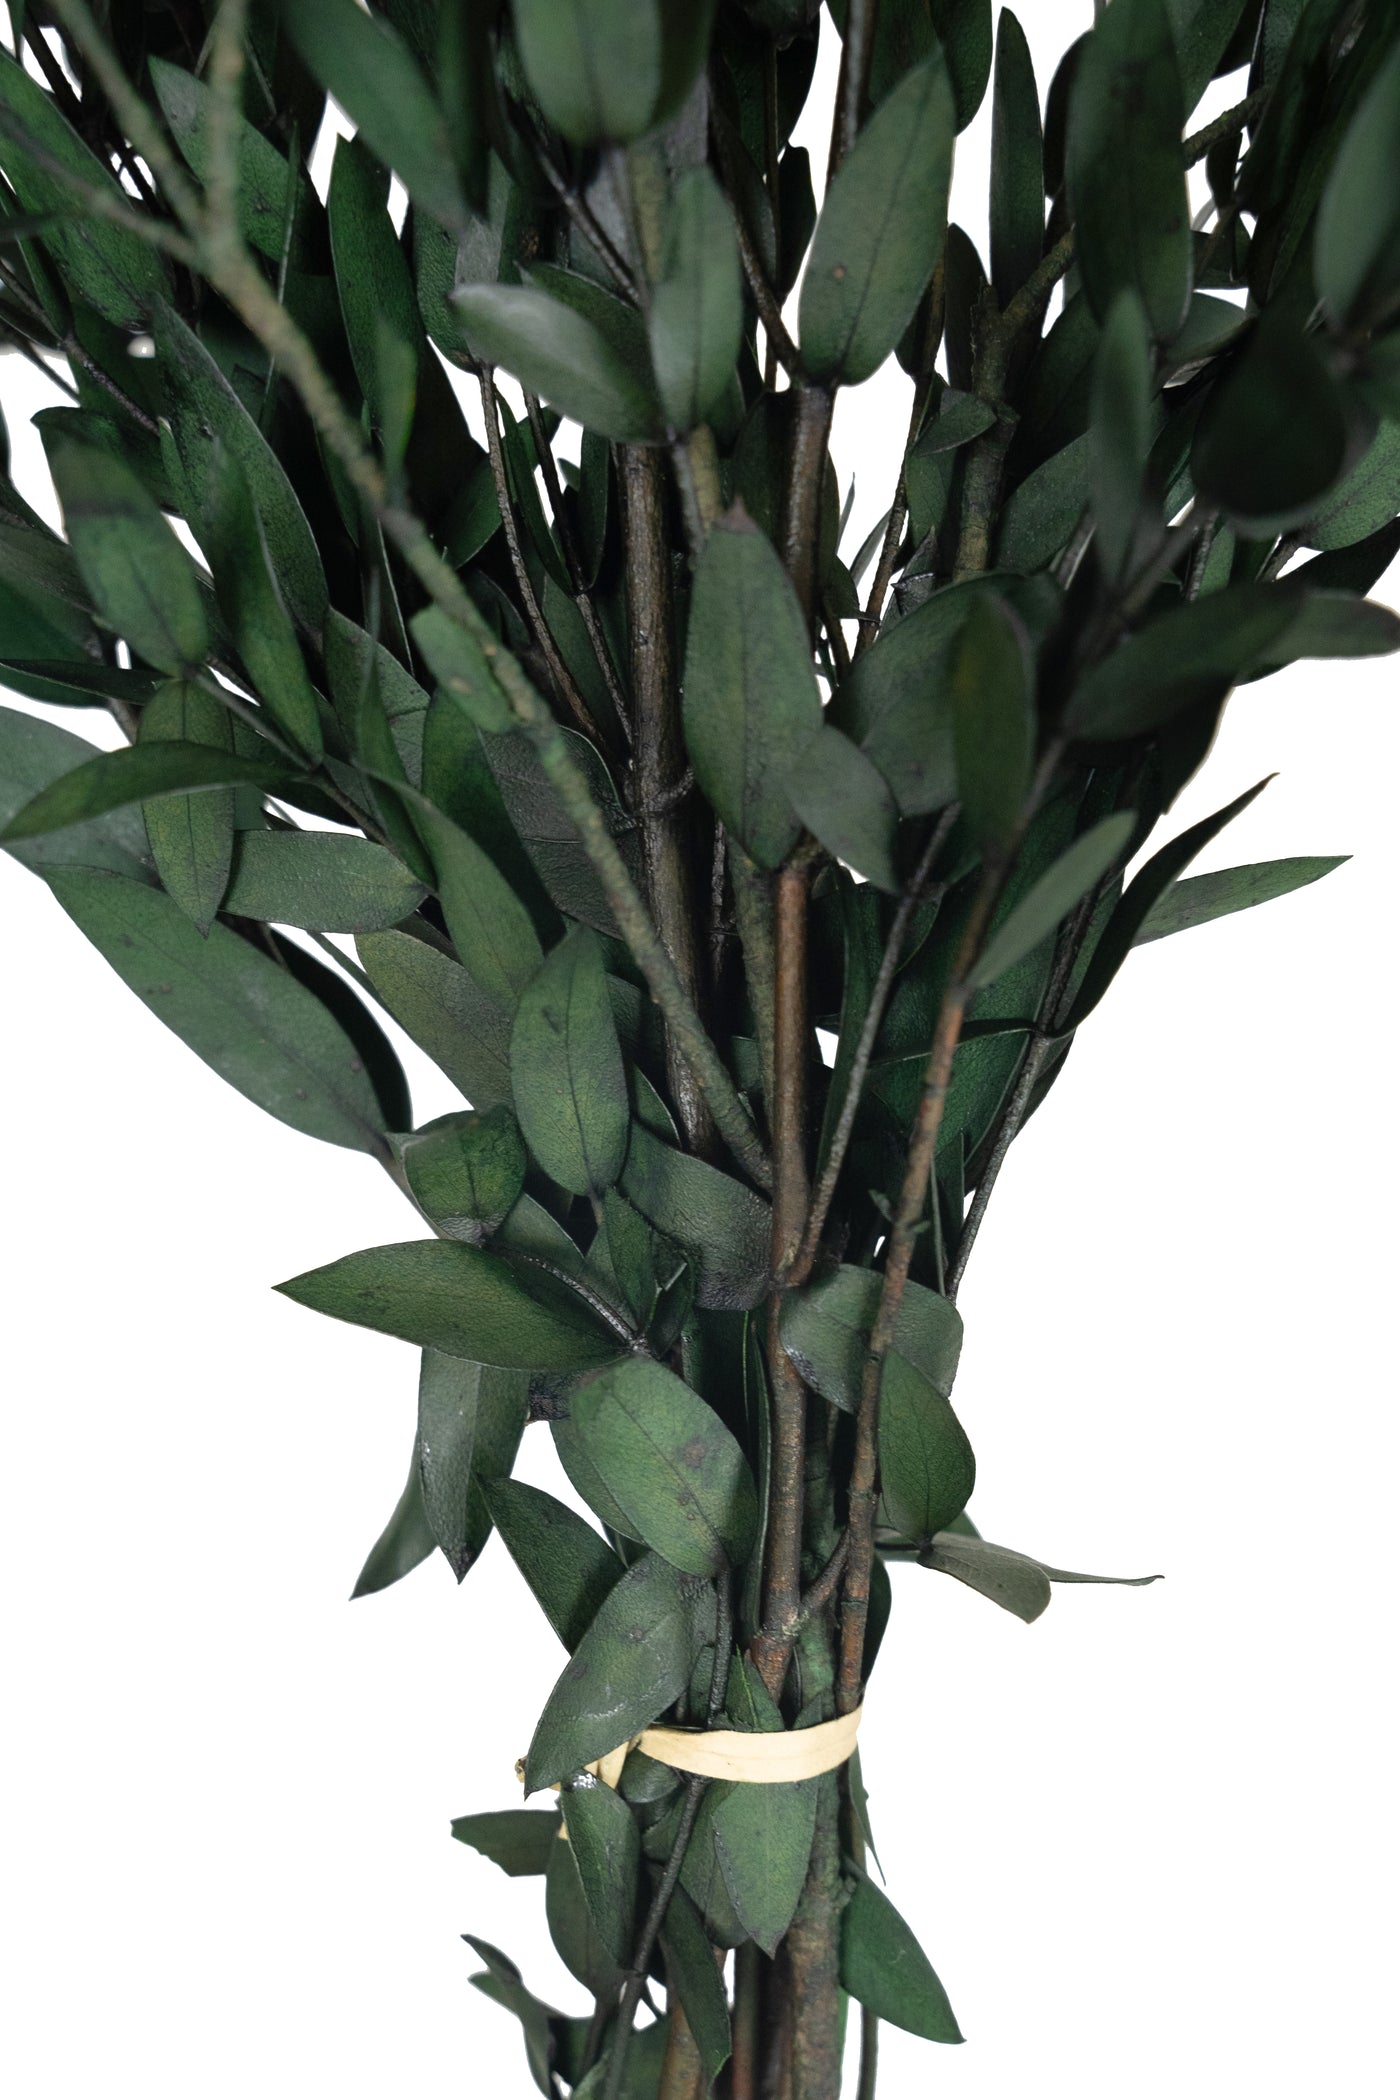 Crenguta conservata de Eucalipt parvifolia H60-70 cm. verde inchis RR1